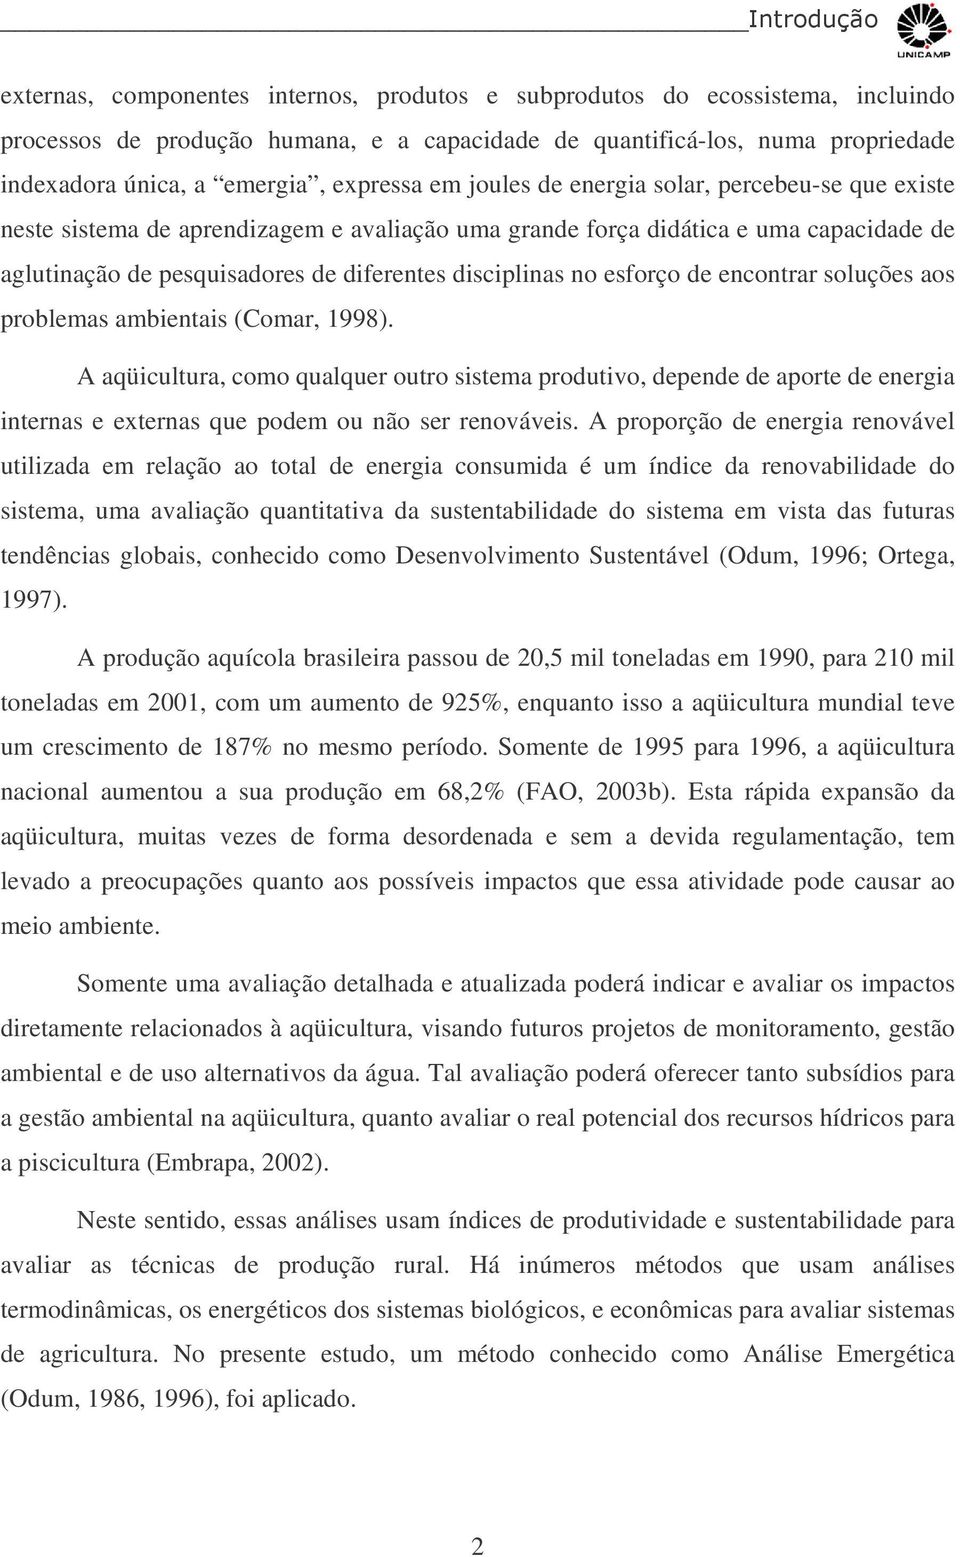 disciplinas no esforço de encontrar soluções aos problemas ambientais (Comar, 1998).